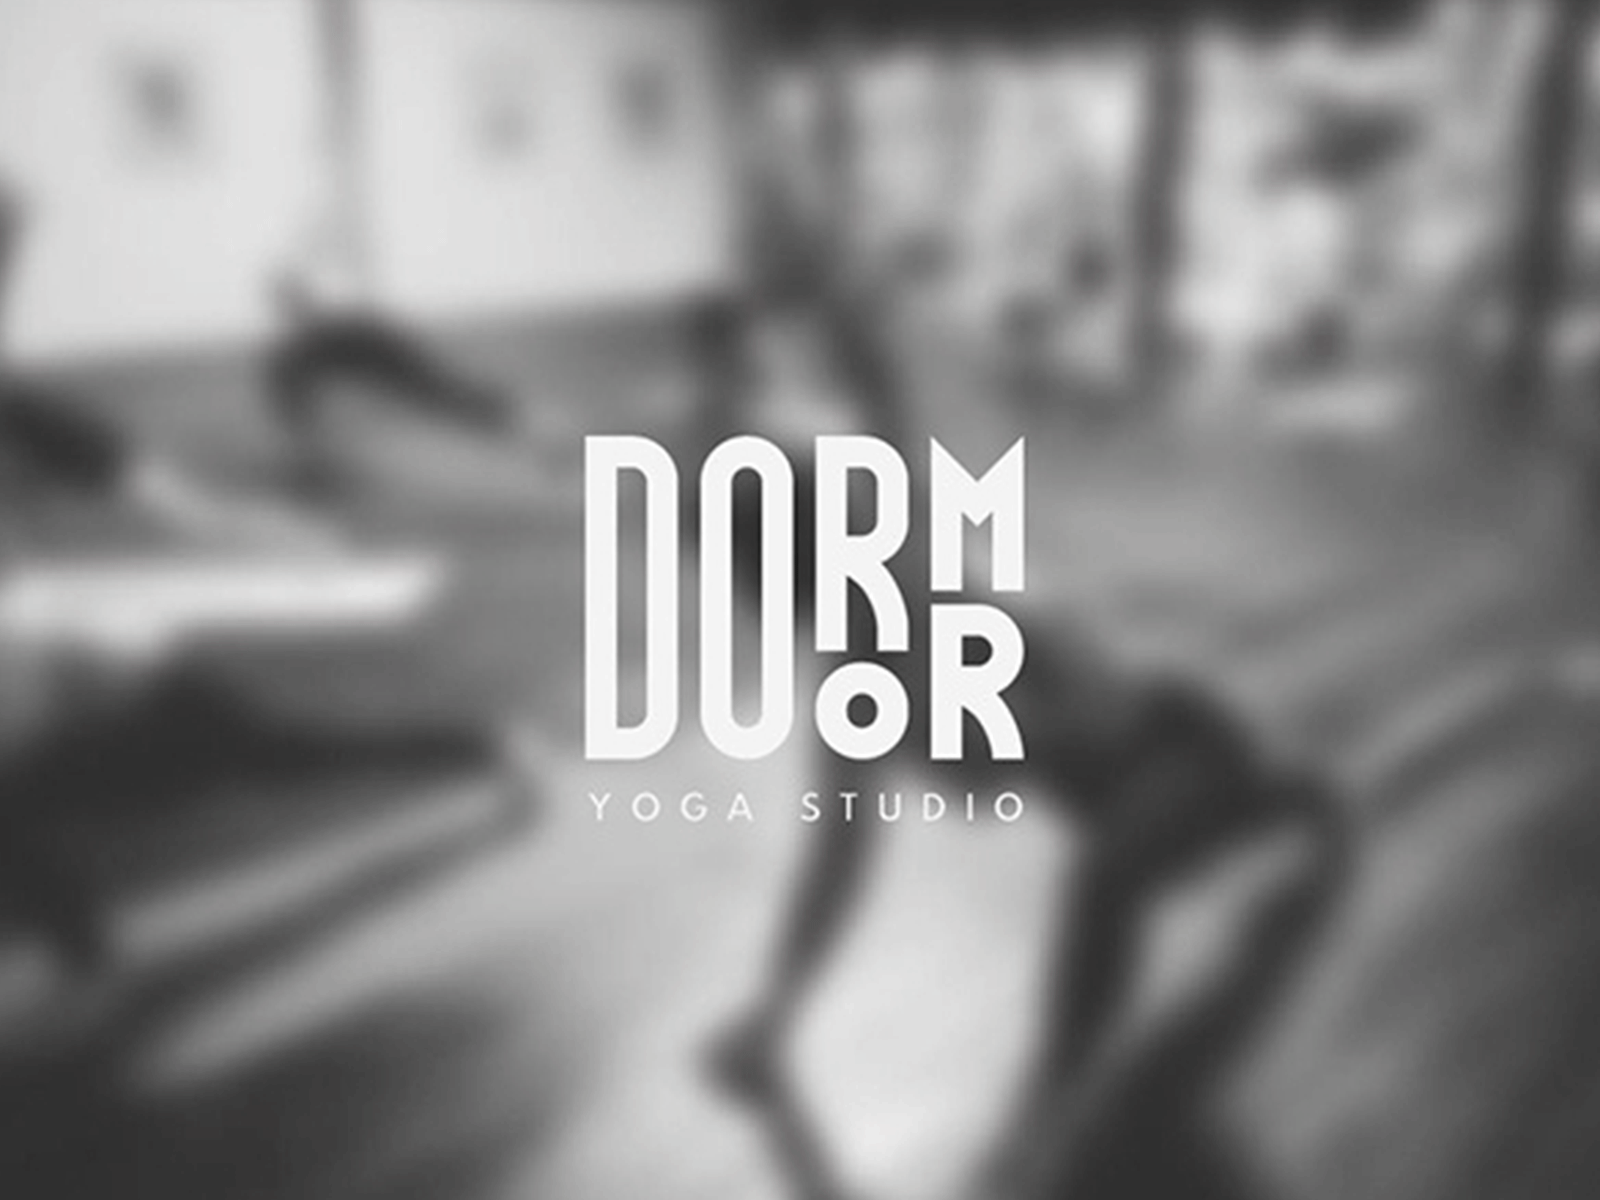 Yoga Studio - Dorm Door branding logo logo design logo yoga yoga yoga studio